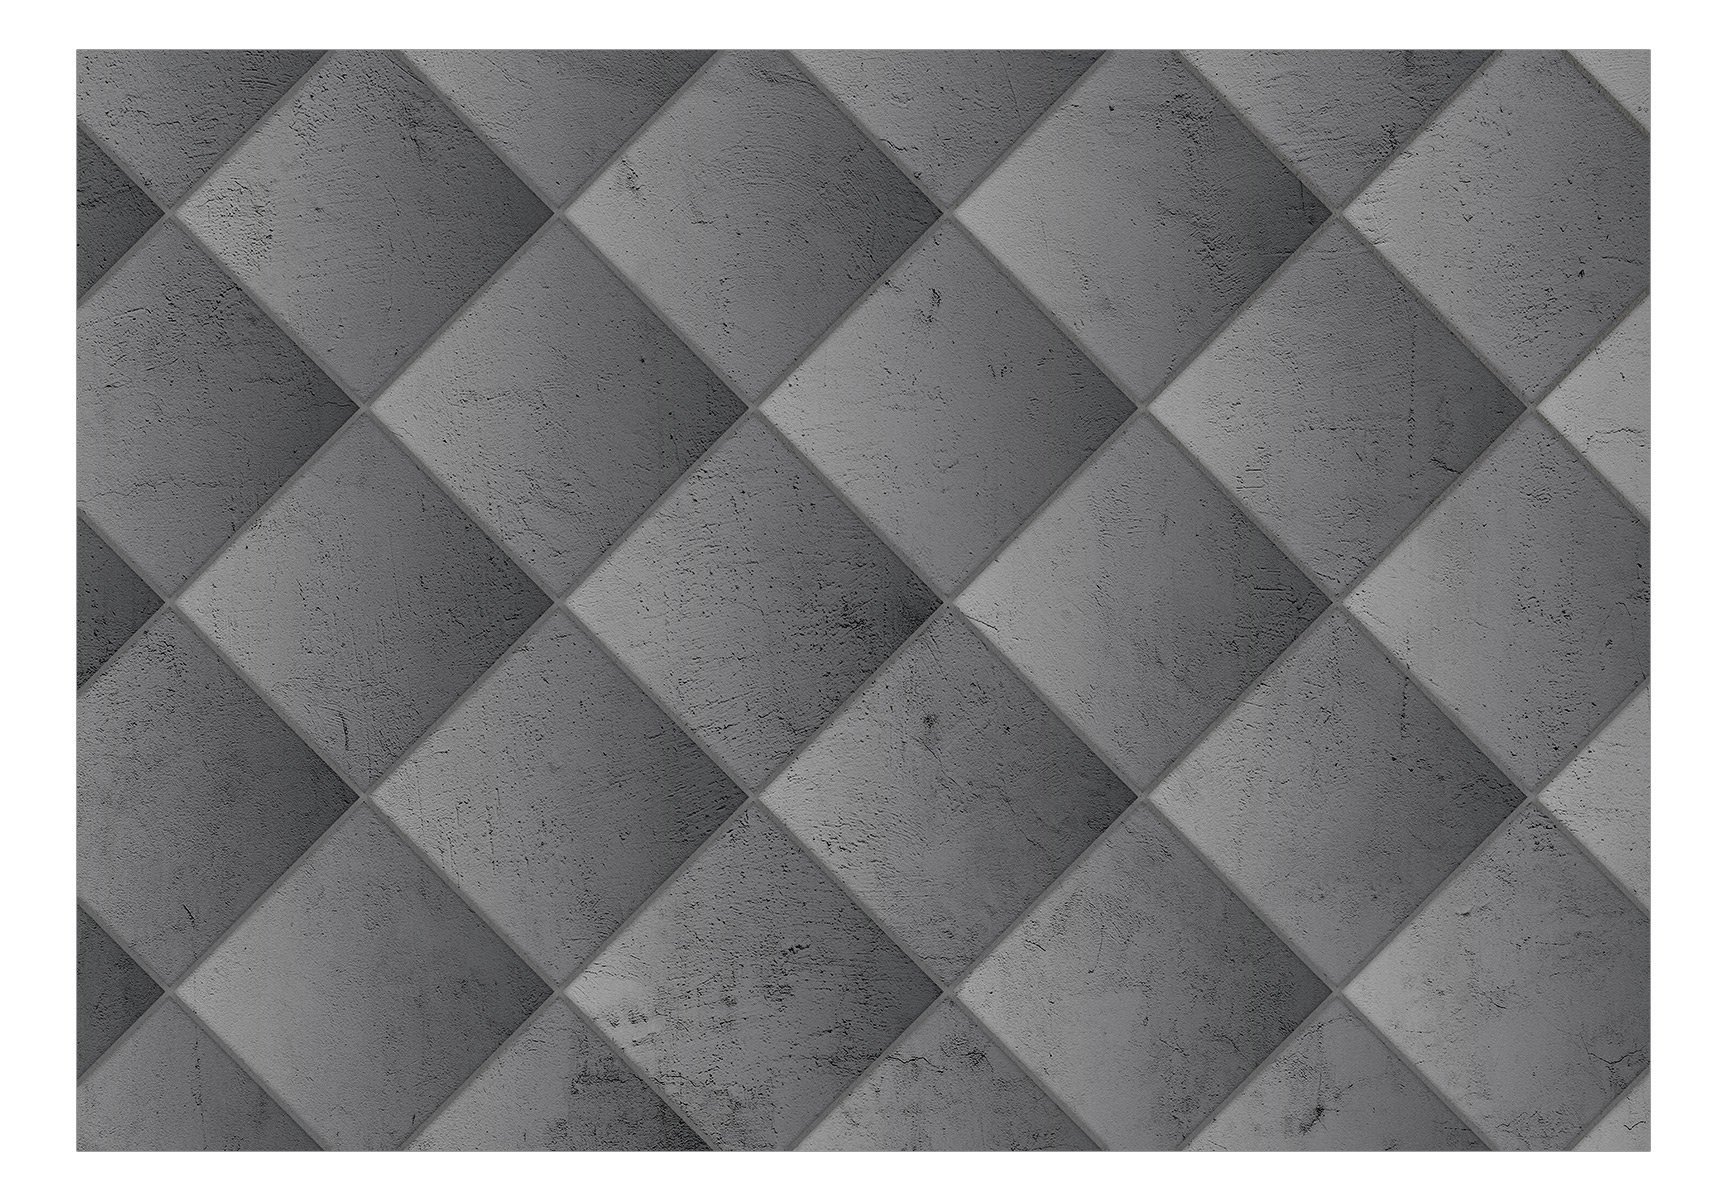 Tapete Variant Vliestapete matt, m, 0.98x0.7 lichtbeständige Second - Design Geometry Concrete KUNSTLOFT